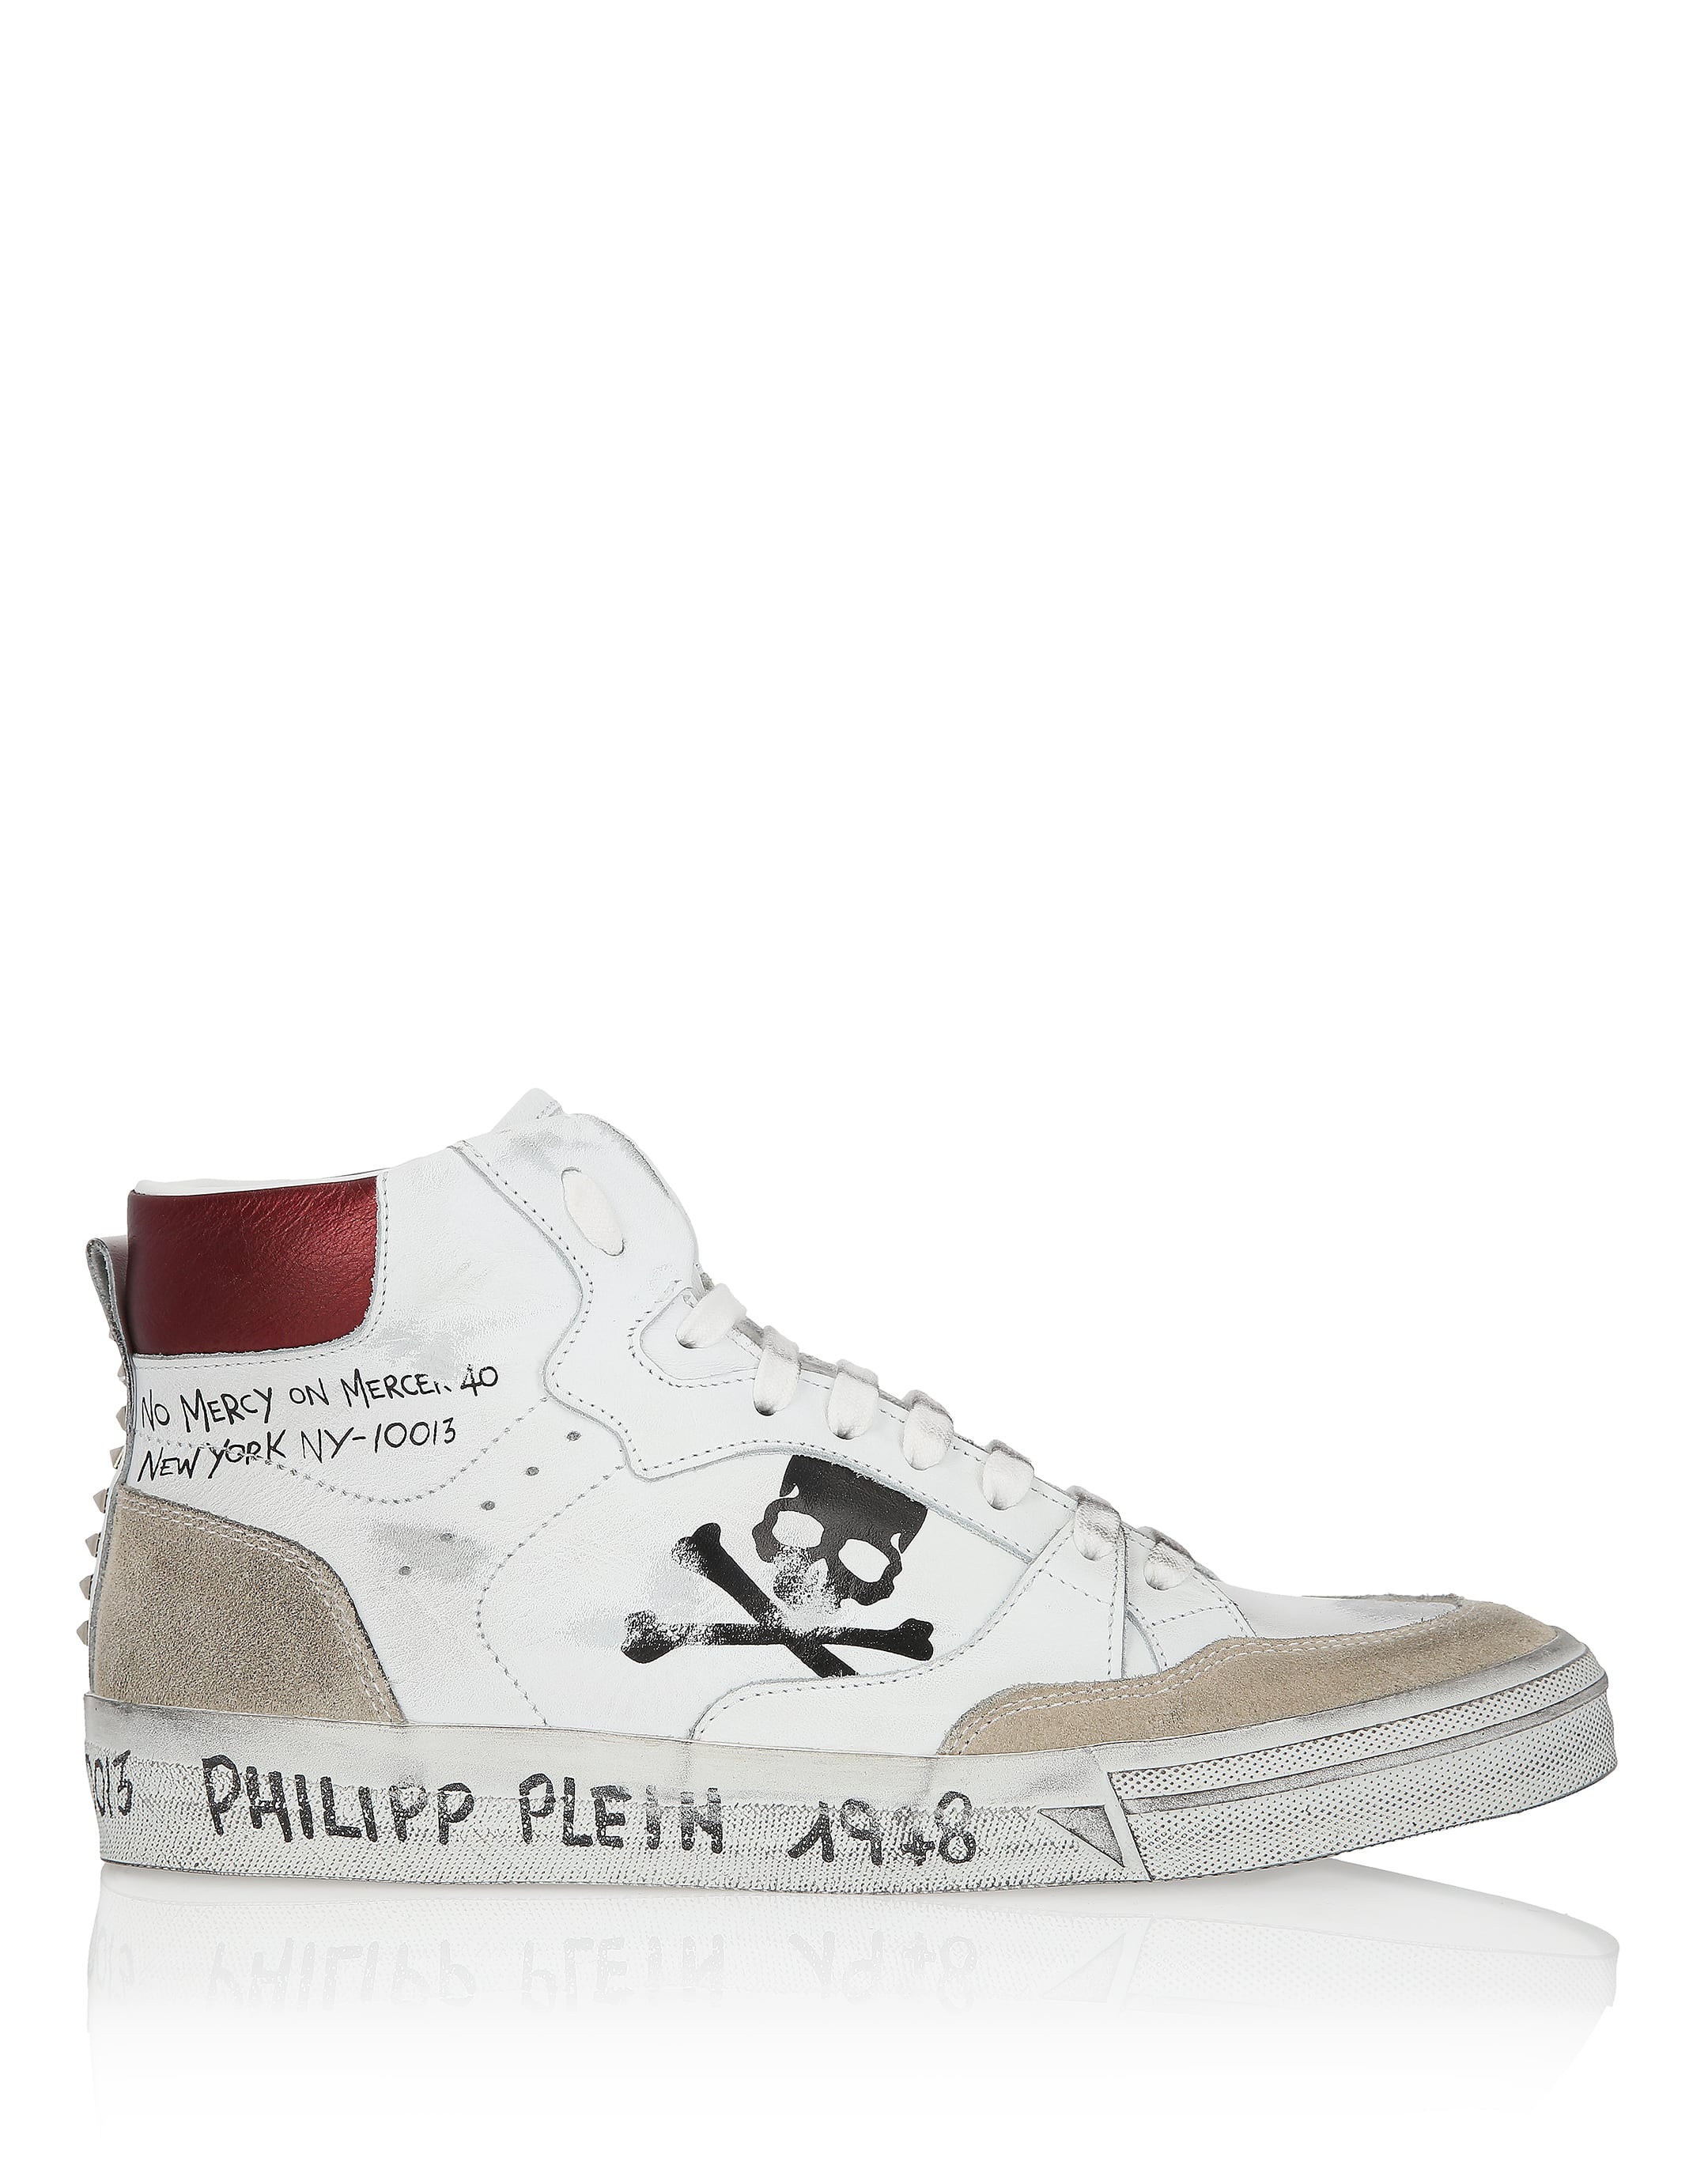 philipp plein no mercy sneakers